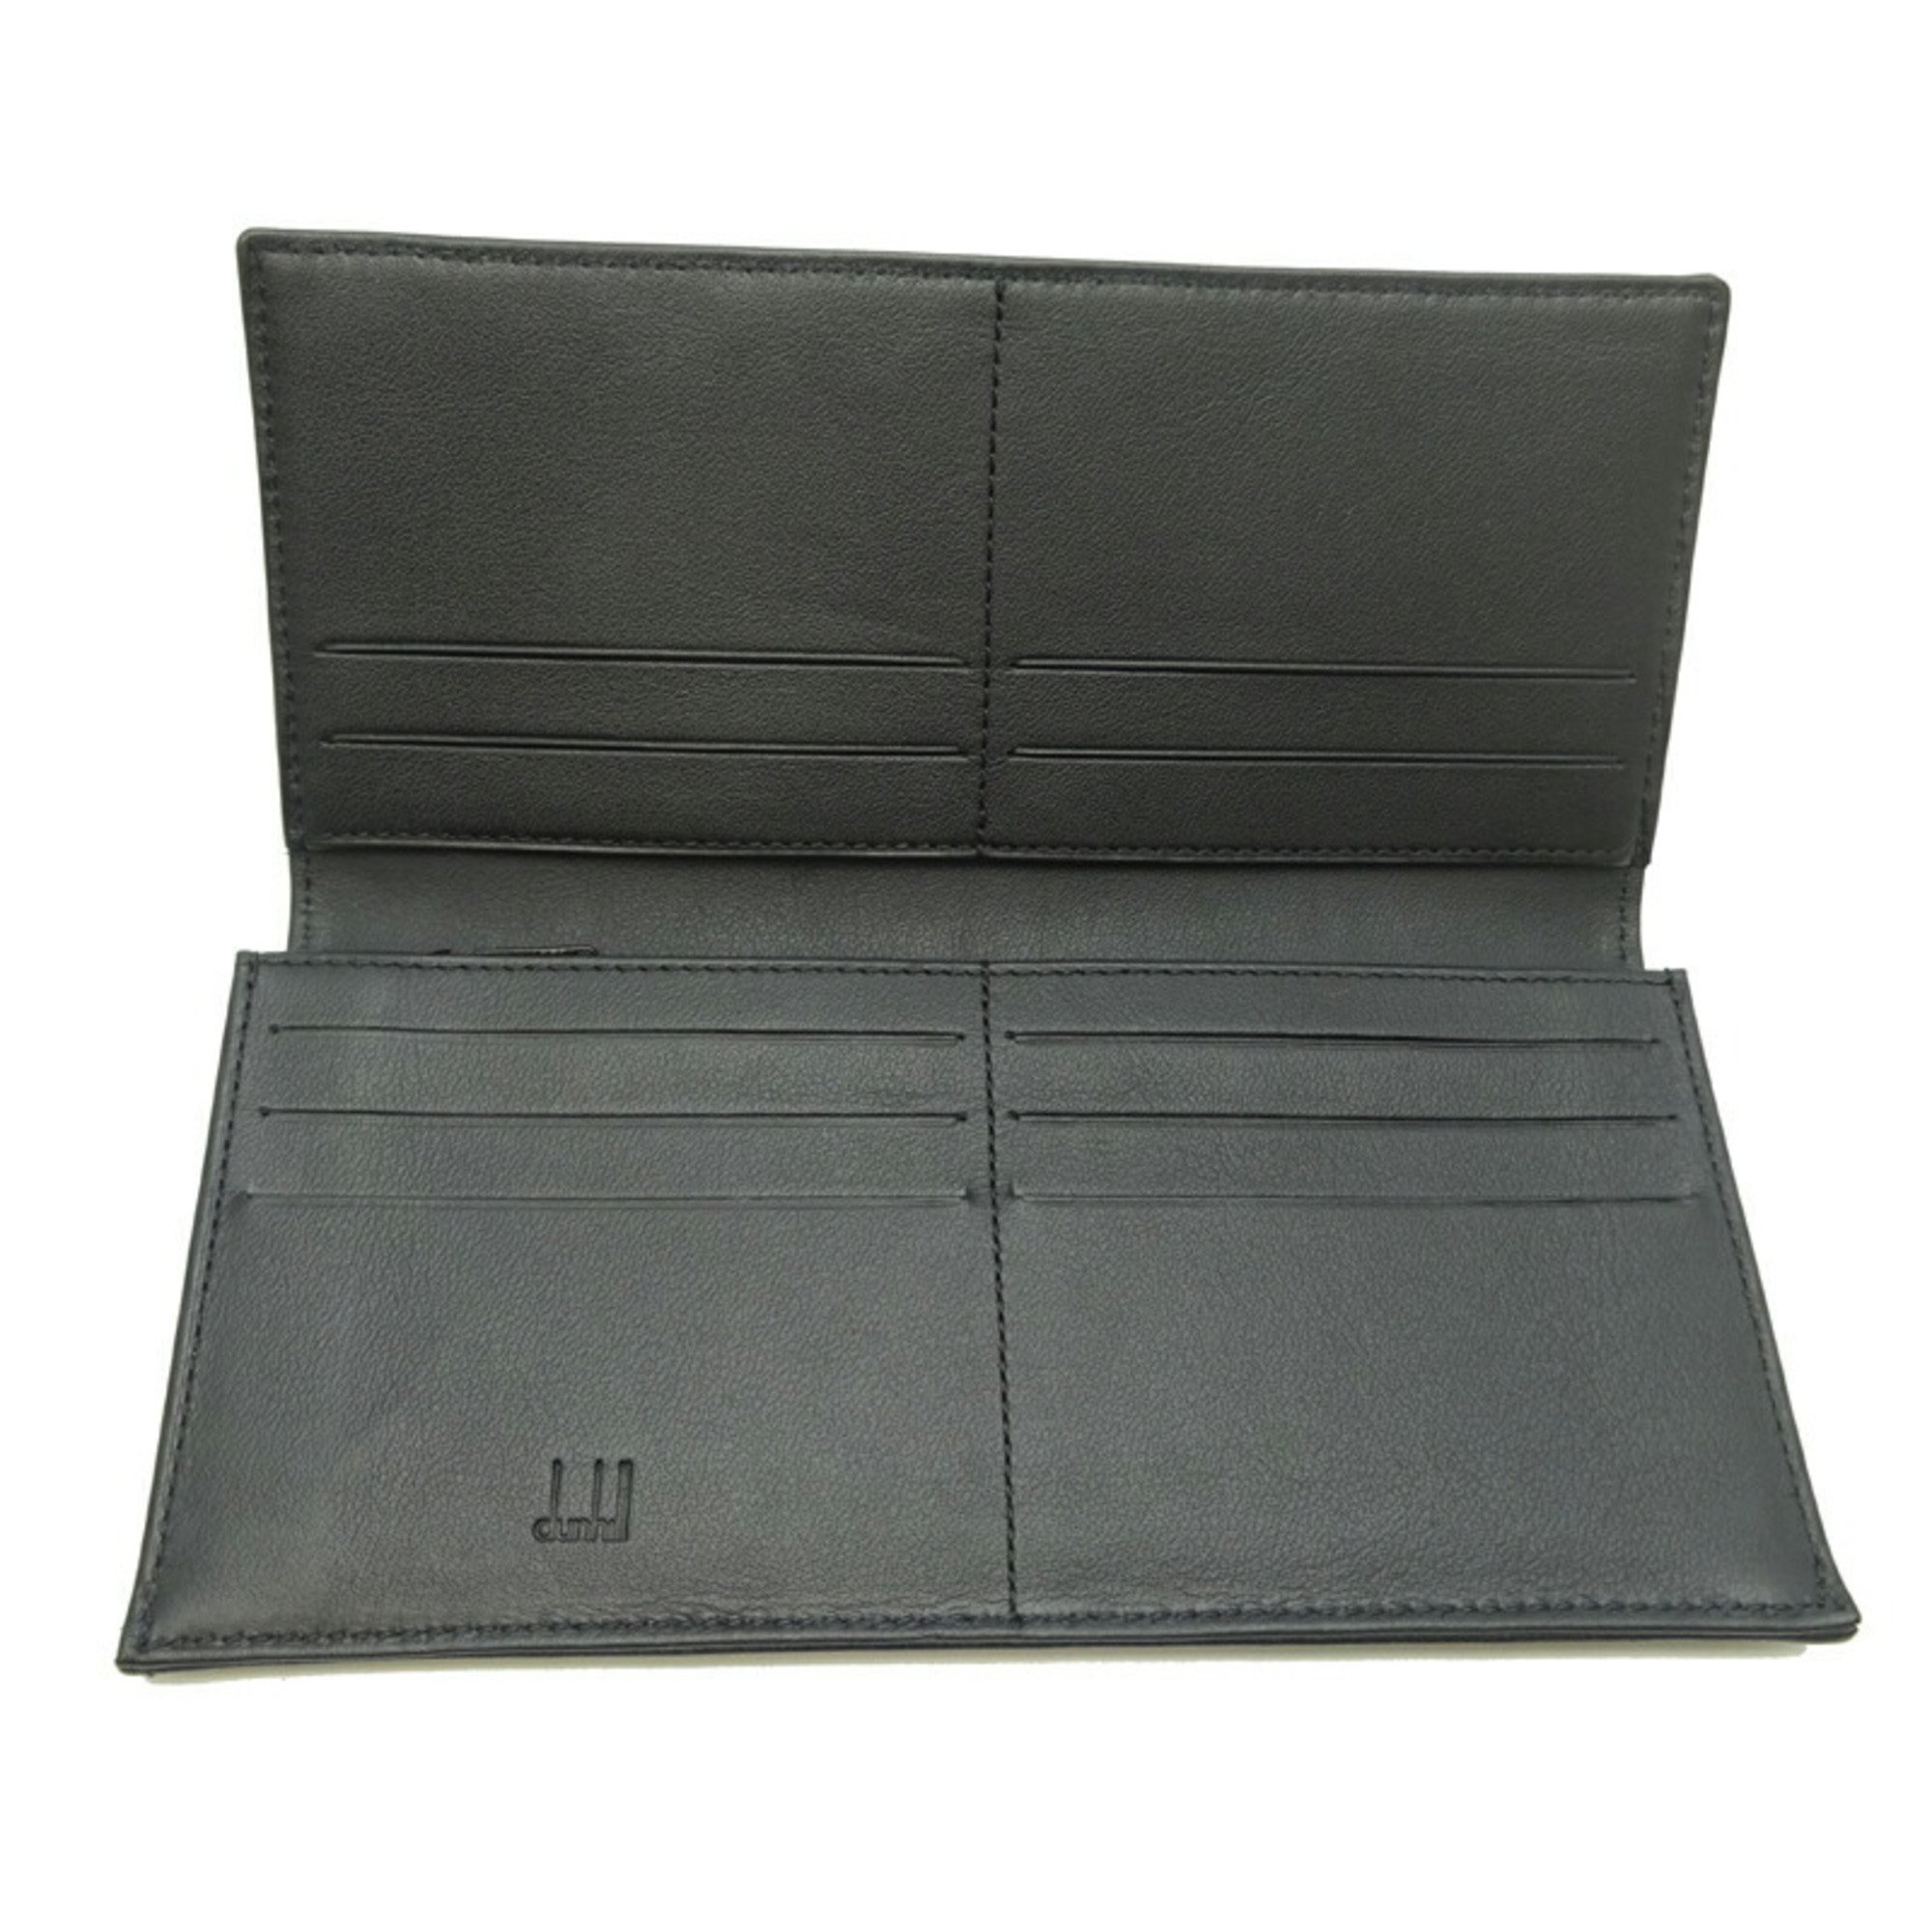 Dunhill D-EIGHT Men's Long Wallet LQ1010A Leather Black